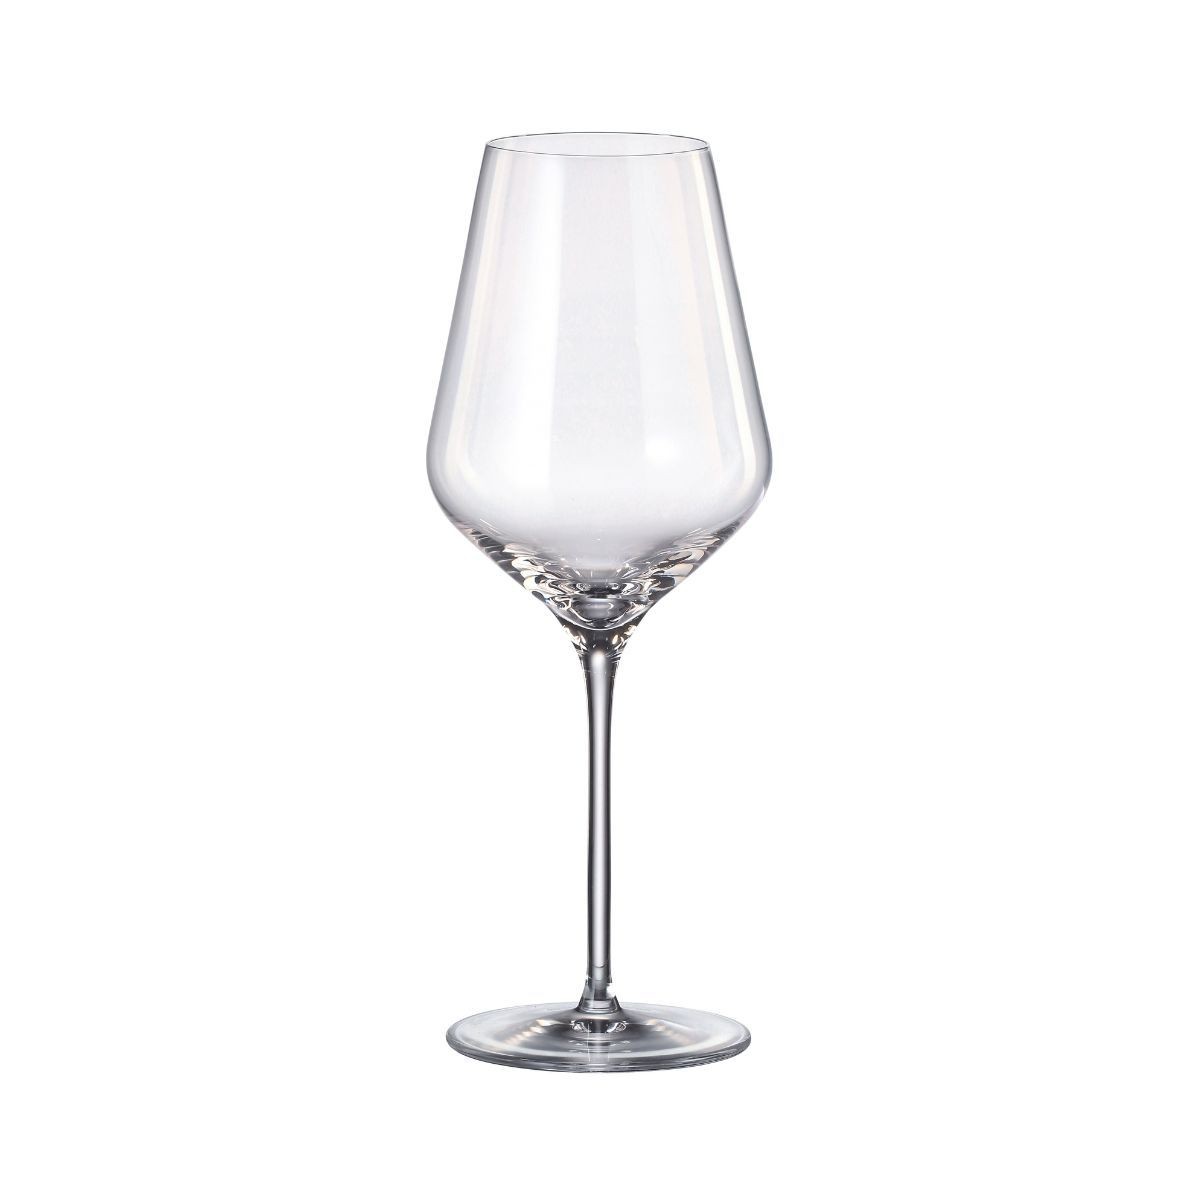 Set de 6 pahare pentru vin alb, transparent, din cristal de Bohemia, 570 ml, Louvre White Wine